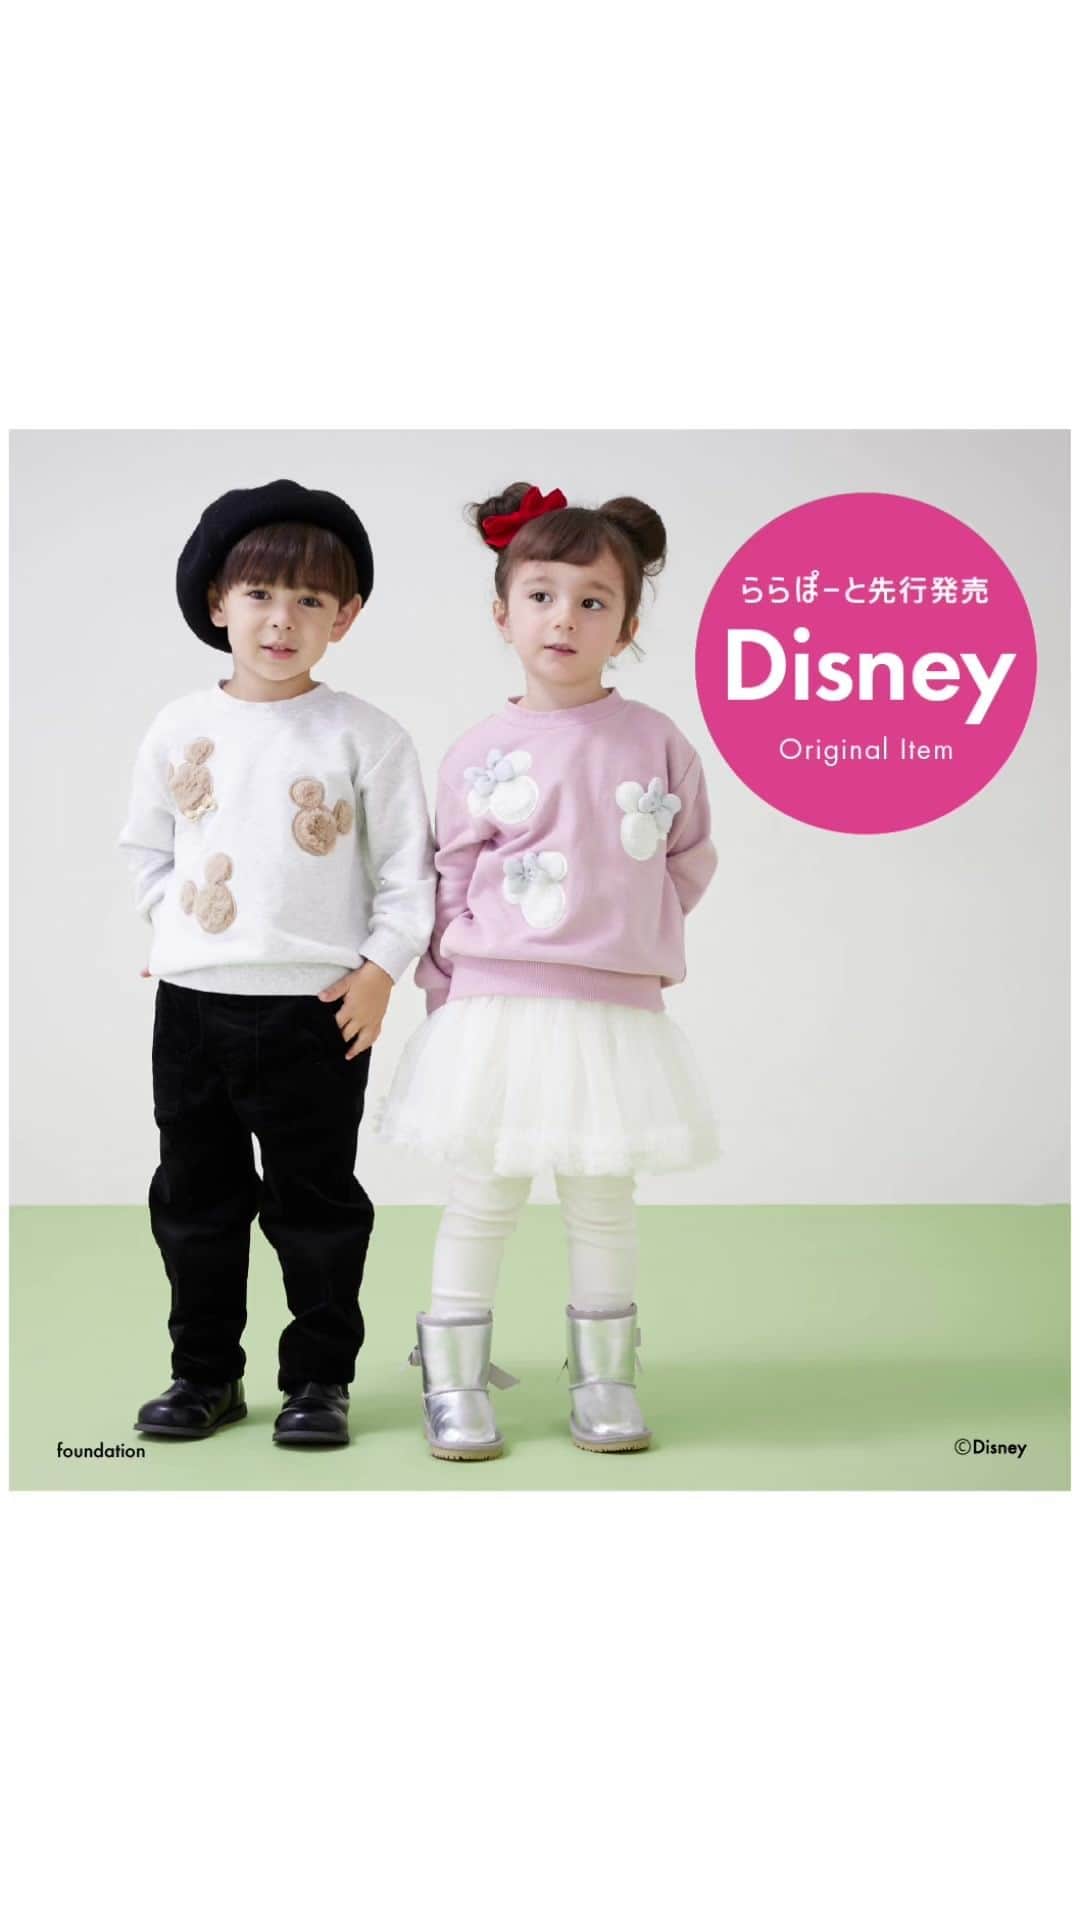 petit mainのインスタグラム：「. 　 　 　 Disney100周年を記念して スペシャルアイテムが発売！ 　 プティマイン〈ららぽーと〉 系列店舗にて先行発売スタート！ 　 発売日：11月17日より順次発売 　 　 ふわふわファーのアップリケが冬らしく可愛い！ 　 ミッキーマウスにはキラキラリボンタイ、 ミニーマウスにはキラキラリボン。 　 デイリーに着やすいトレーナーでご用意しました。 　 クリスマスの贈り物にもぴったりなアイテムを ぜひチェックしてくださいね。 　 　 〈チュールとキラキラブーツで冬のおめかしスタイル〉 〈モノトーンでおしゃれなパークスタイル〉 〈ブラックで大人顔負けのおろそいスタイル〉 　 パークに行くならこんなスタイルがおすすめ！ 思い出に残るスタイルになること間違いなしです。 　 　 　　 【Disney】 ファーアップリケトレーナー 80〜130cm 品番：9534213 価格：¥2,860（税込） 　 　 　 モデル着用 model girl：身長93㎝ / 着用90㎝ model girl：身長98㎝ / 着用100㎝ model boy：身長101㎝ / 着用100㎝ 　 　 　 【11月17日より先行販売店舗】 　 他店舗・ナルミヤオンラインは12月11日より順次発売 　 ららぽーとTOKYO-BAY ららぽーと立川立飛 ららぽーと海老名 ららぽーと富士見 ららぽーと名古屋みなとアクルス ららぽーと甲子園 ららぽーとEXPOCITY ららぽーと門真 アーバンドック ららぽーと豊洲 ららぽーと横浜 ららぽーと湘南平塚 ららぽーと沼津 ららぽーと愛知東郷 ららぽーと和泉 ららぽーと堺 ららぽーと福岡 　 　 　 　 〈ご注意〉 ※写真はサンプルで撮影しています。色・デザインが多少が異なる場合がございます。 ※入荷、在庫状況は店舗によって異なる場合がございます。ご利用の店舗までご確認ください。 ※ナルミヤオンラインでは入荷次第順次発売となります。入荷、在庫状況について詳しくはナルミヤオンラインまでご確認ください。 ※instagram利用規約に基づき、投稿のコメントを削除させていただく場合がございます。 @narumiyaonline_official 　 　 　 　 #disney #ディズニー #mickeymouse #ミッキーマウス #petitmain #プティマイン #プティキッズ #プティの新作 #女の子ベビー #男の子ベビー #むすめふく #むすこーで #女の子コーデ #男の子コーデ #女の子服 #男の子服 #女の子コーディネート #男の子コーディネート #子どものいる暮らし #子どもと暮らす #子供服 #子供服通販 #新生児服 #赤ちゃんのいる暮らし #子育てグラム #instafashion #instagood #限定 #限定アイテム #限定ウェア」